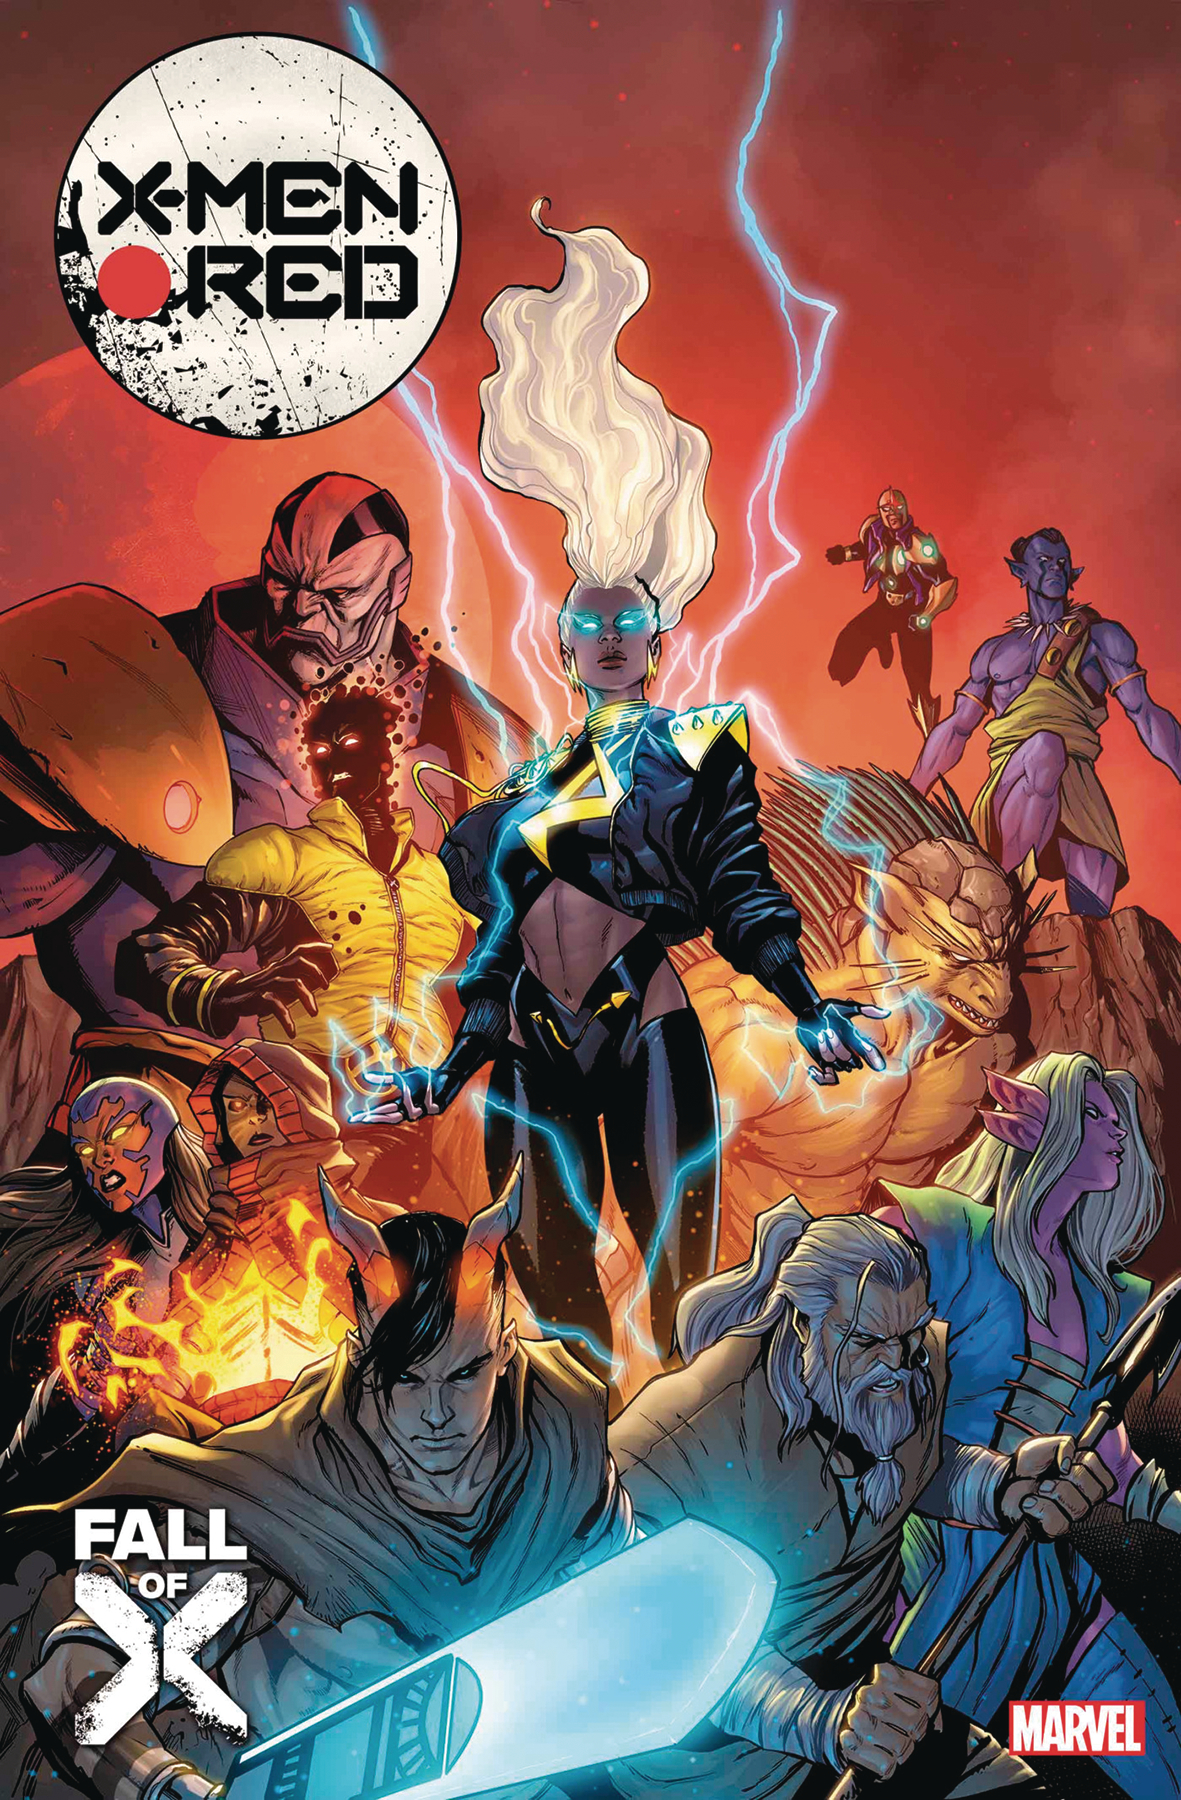 X-Men Red #18 (Fall of the X-Men)